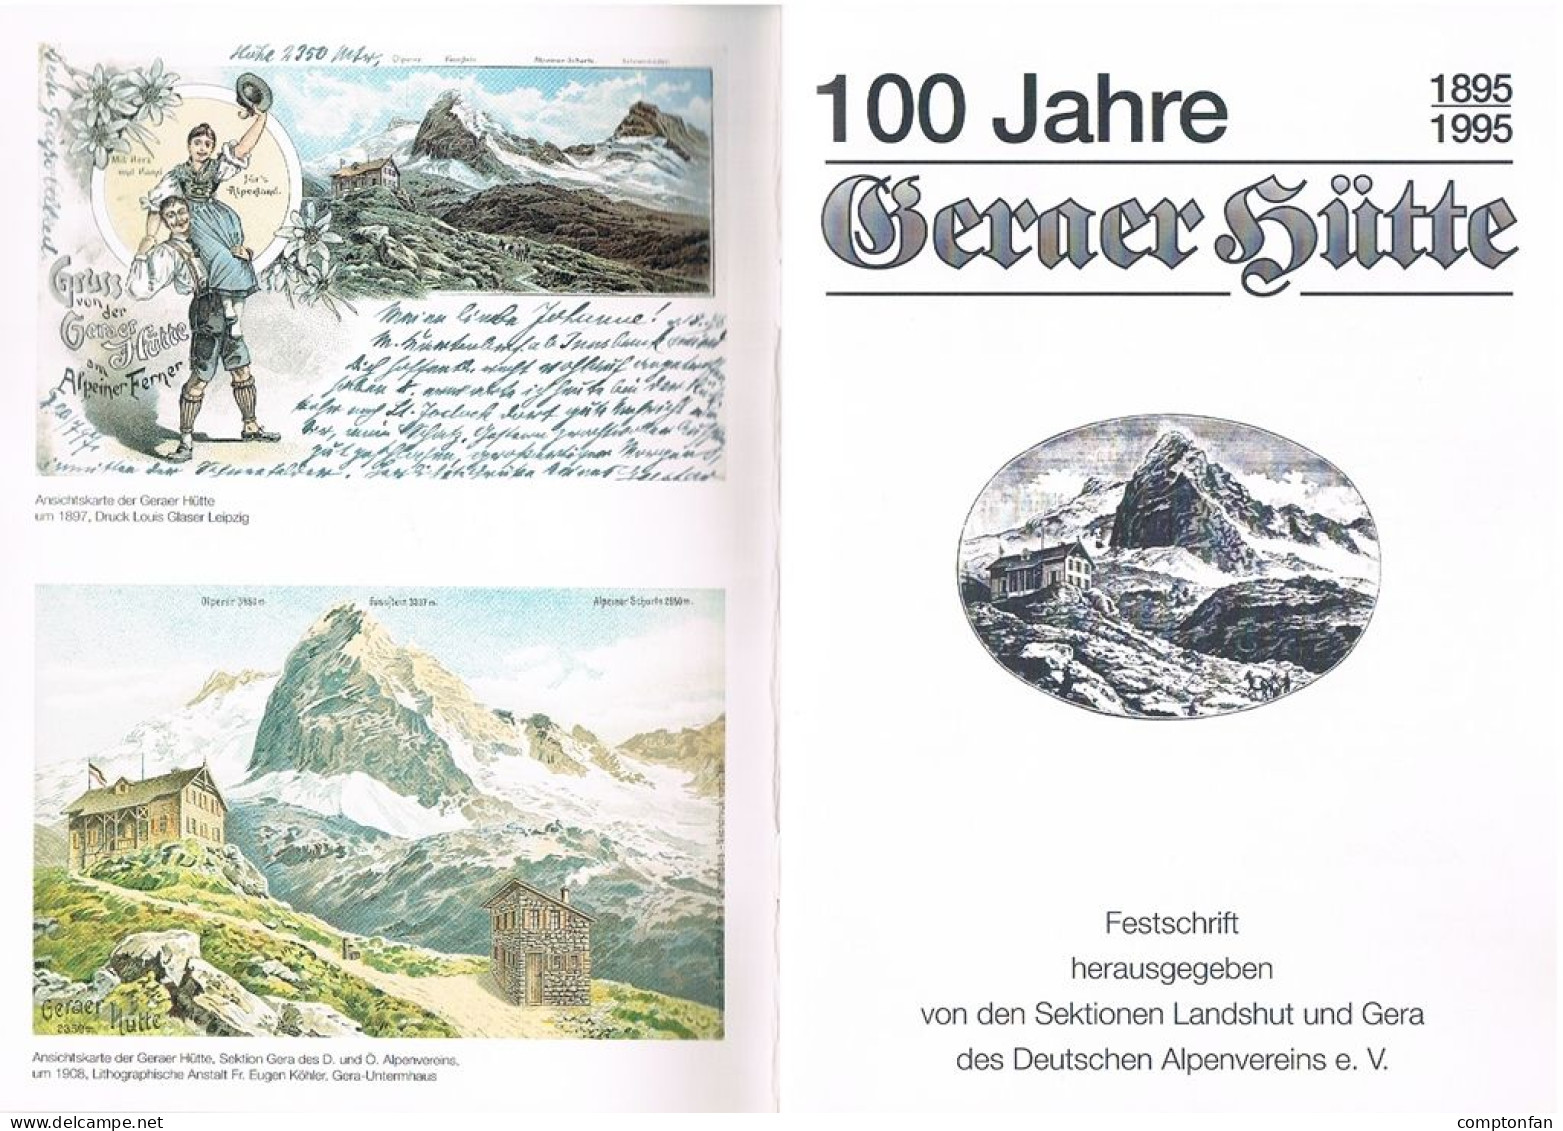 B100 895 Festschrift 100 Jahre Geraer Hütte Deutscher Alpenverein Rarität ! - Old Books